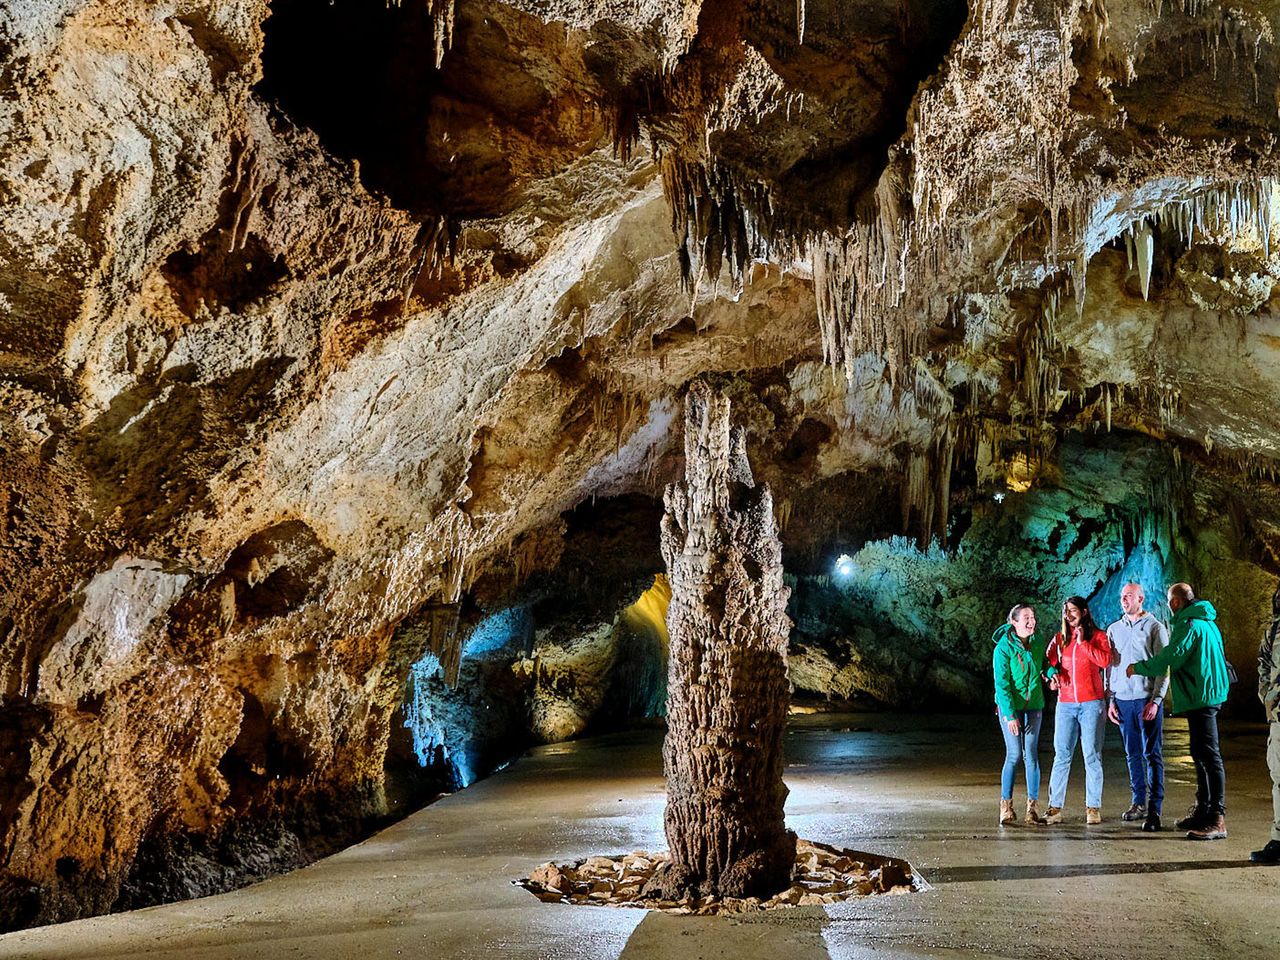 Липская пещера и панорамный тур "Вокруг Корита" | Цена 240€, отзывы, описание экскурсии